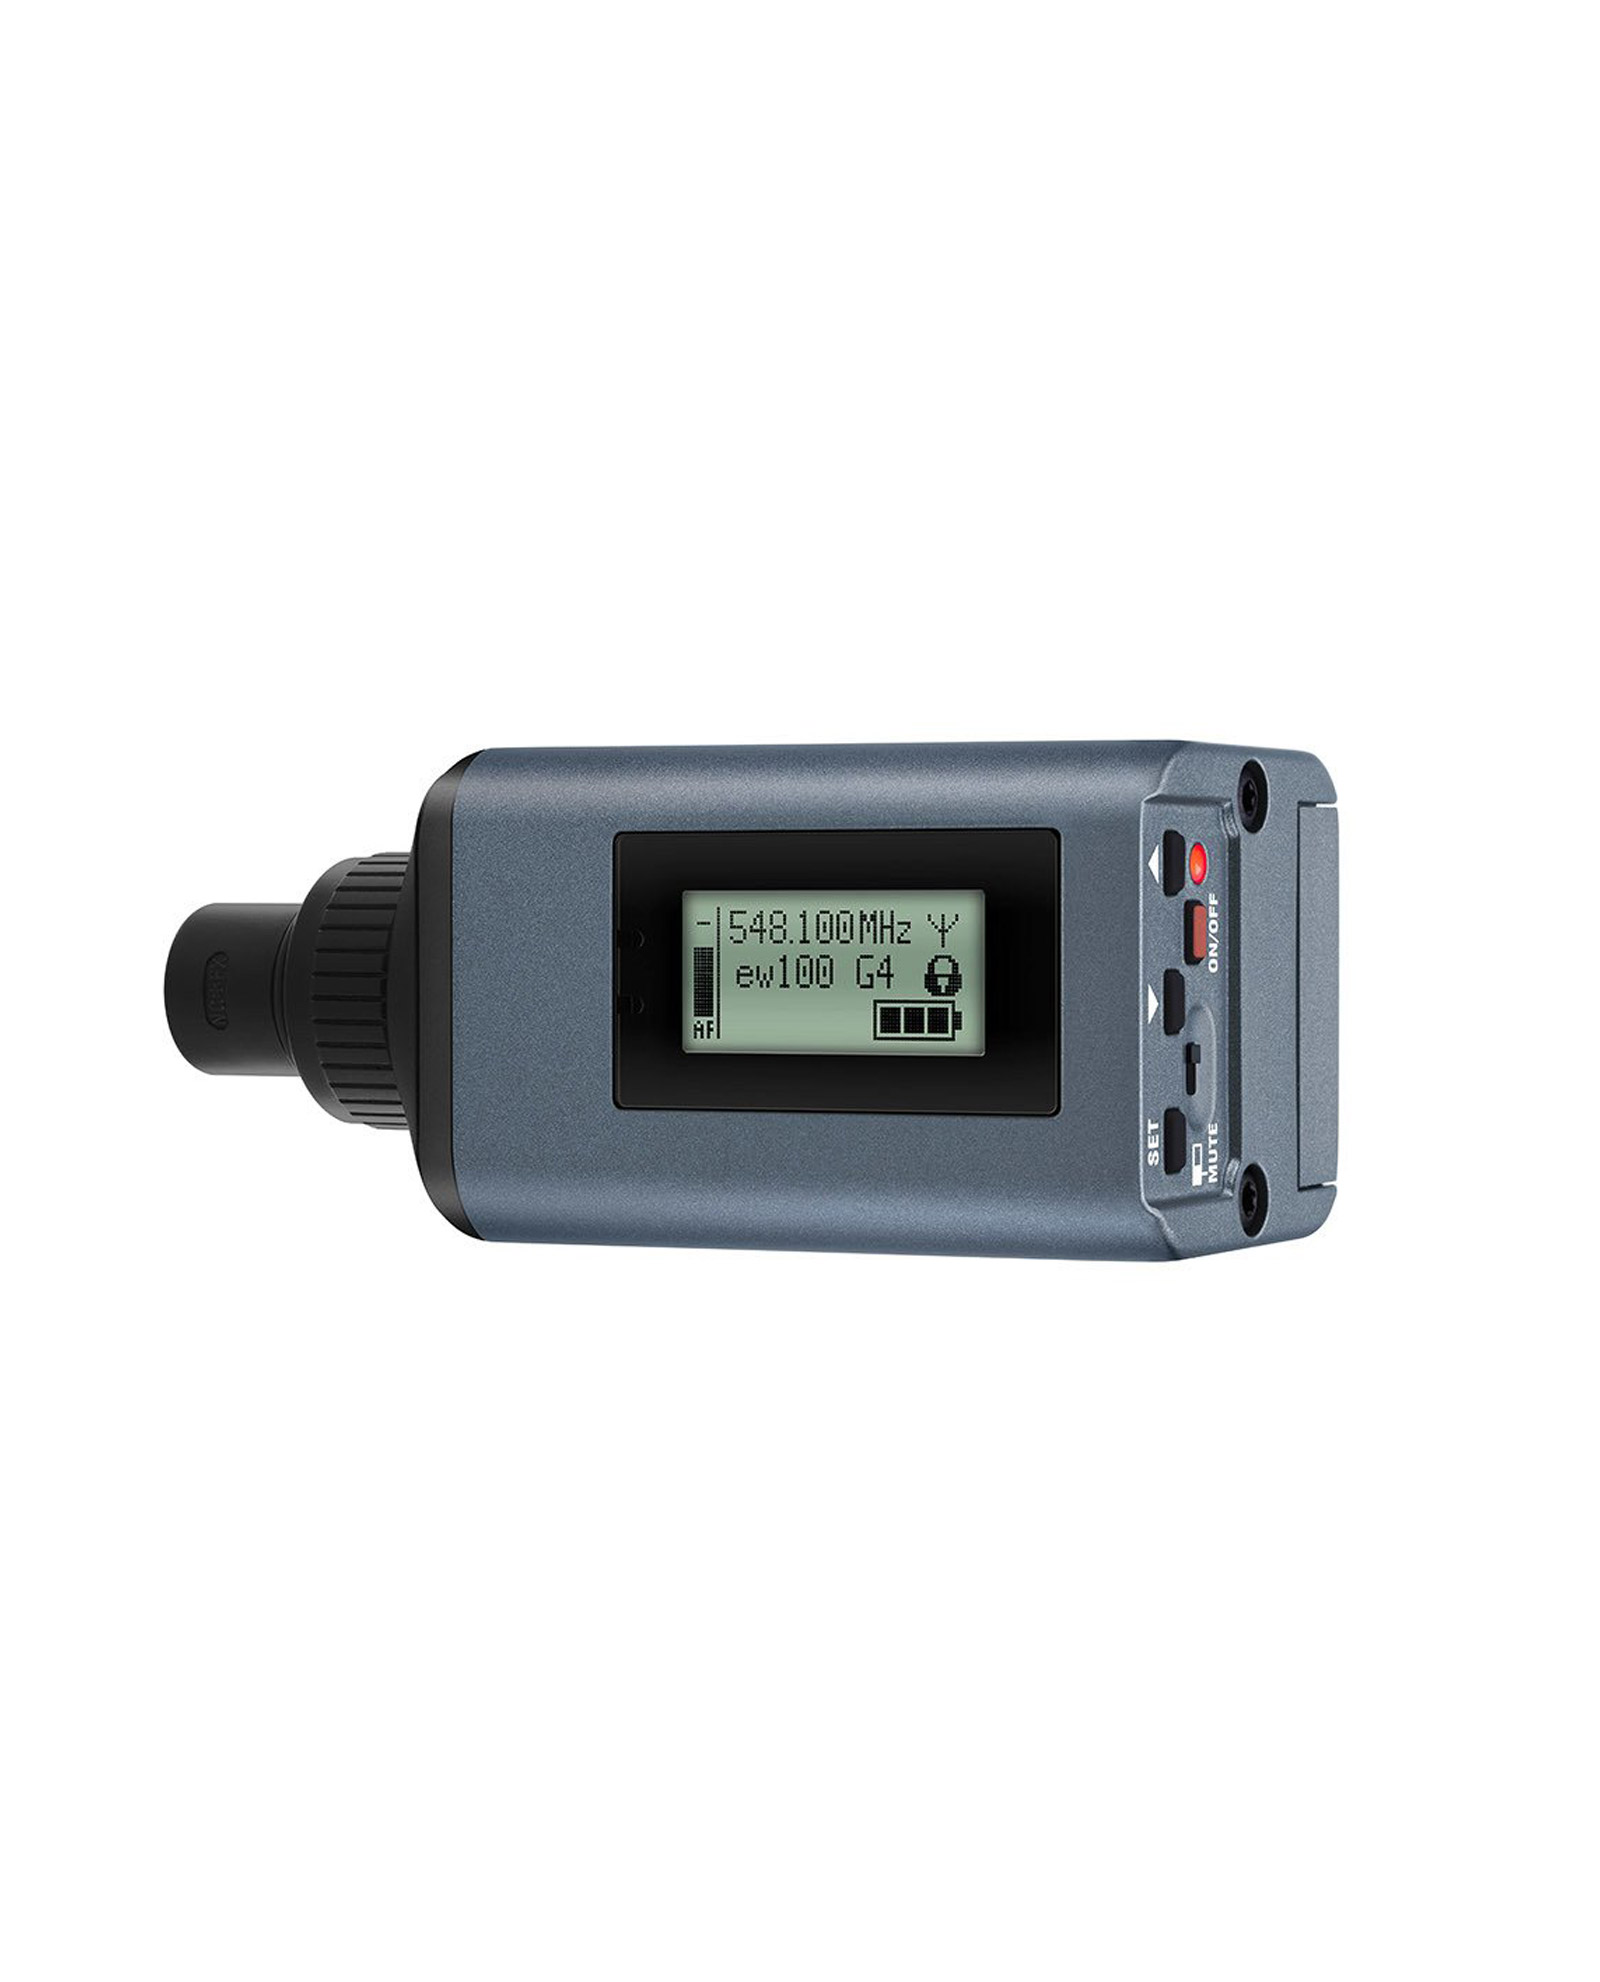 Sennheiser Skp 100 G4 Plug On Transmitter Microphone 1